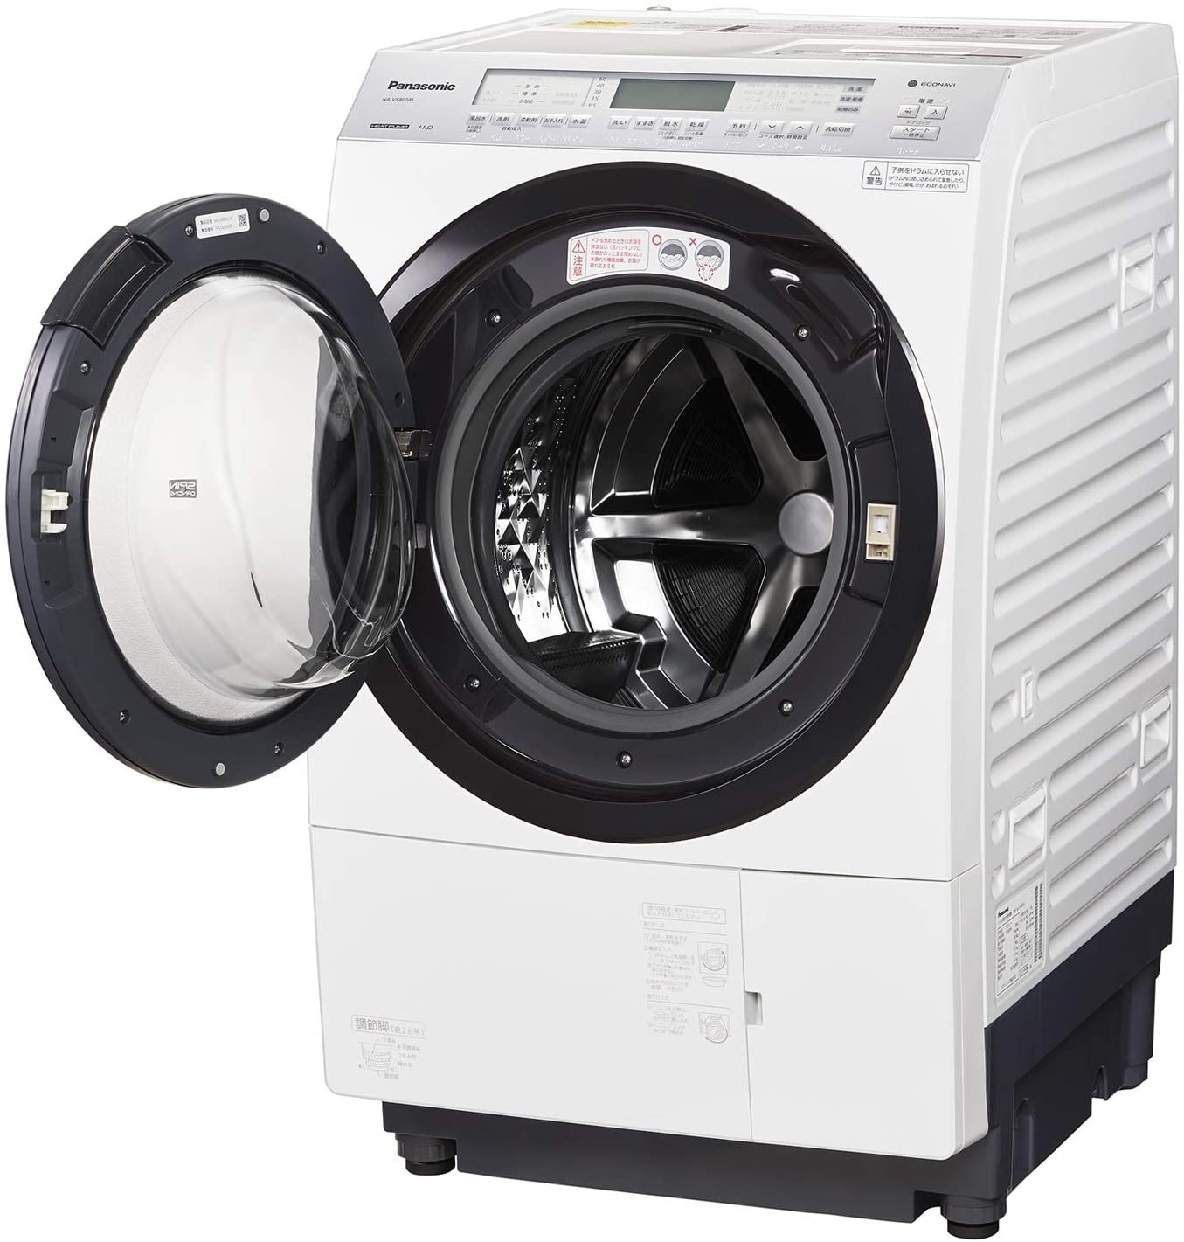 Panasonic(パナソニック) ななめドラム洗濯乾燥機 NA-VX800Aの商品画像サムネ4 